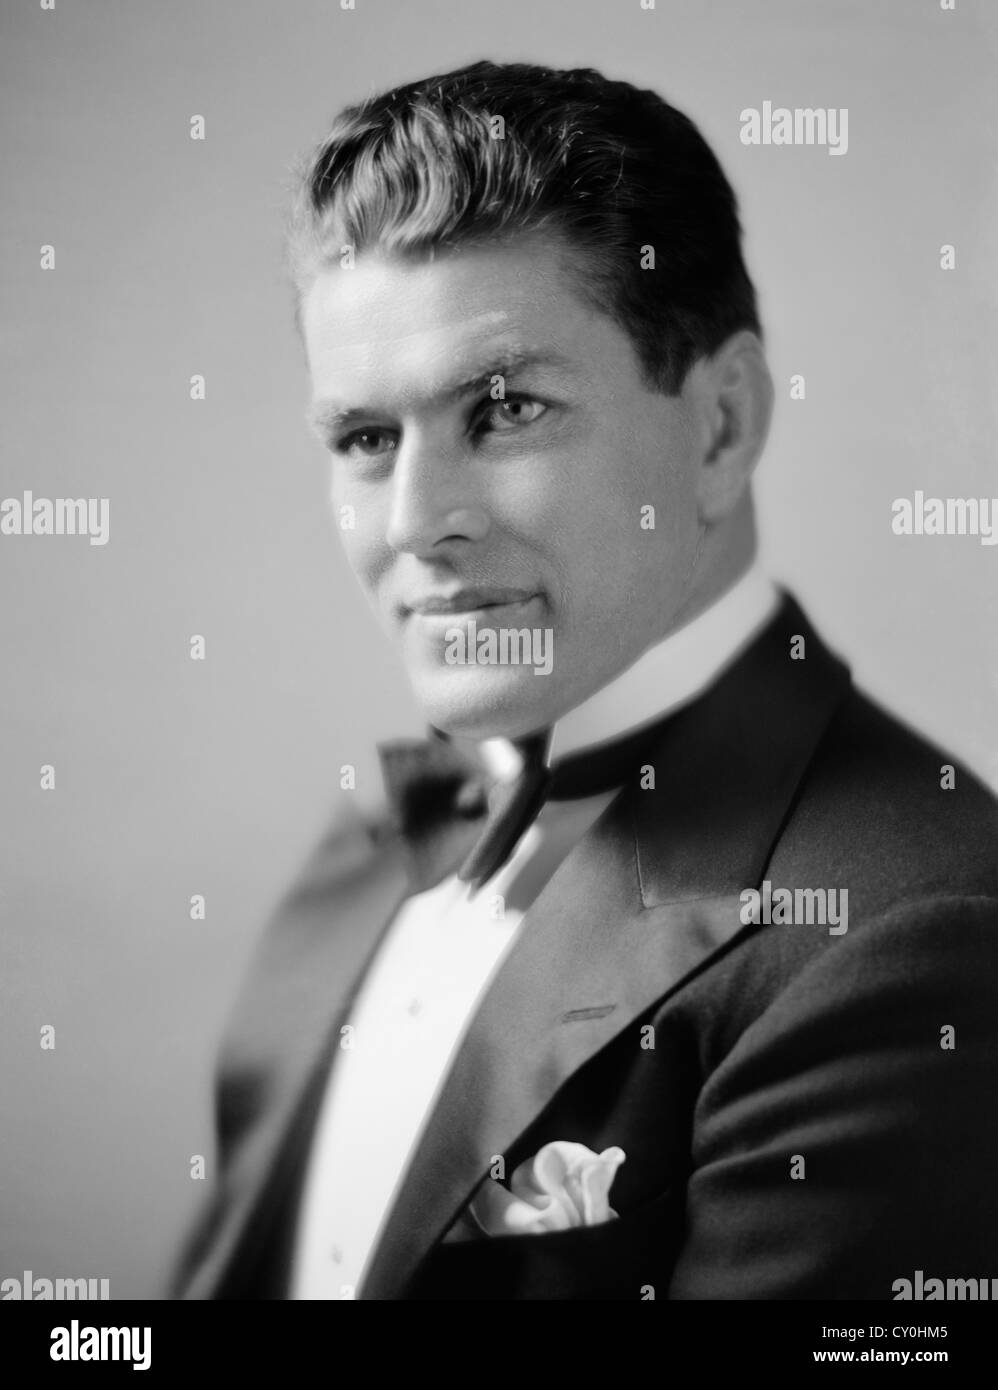 Oldtimer-Portraitfoto des Boxers Gene Tunney (1897 – 1978) – Tunney, bekannt als „The Fighting Marine“, war von 1926 bis 1928 Weltmeister im Schwergewicht. Undatierte Aufnahme von Harris & Ewing. Stockfoto